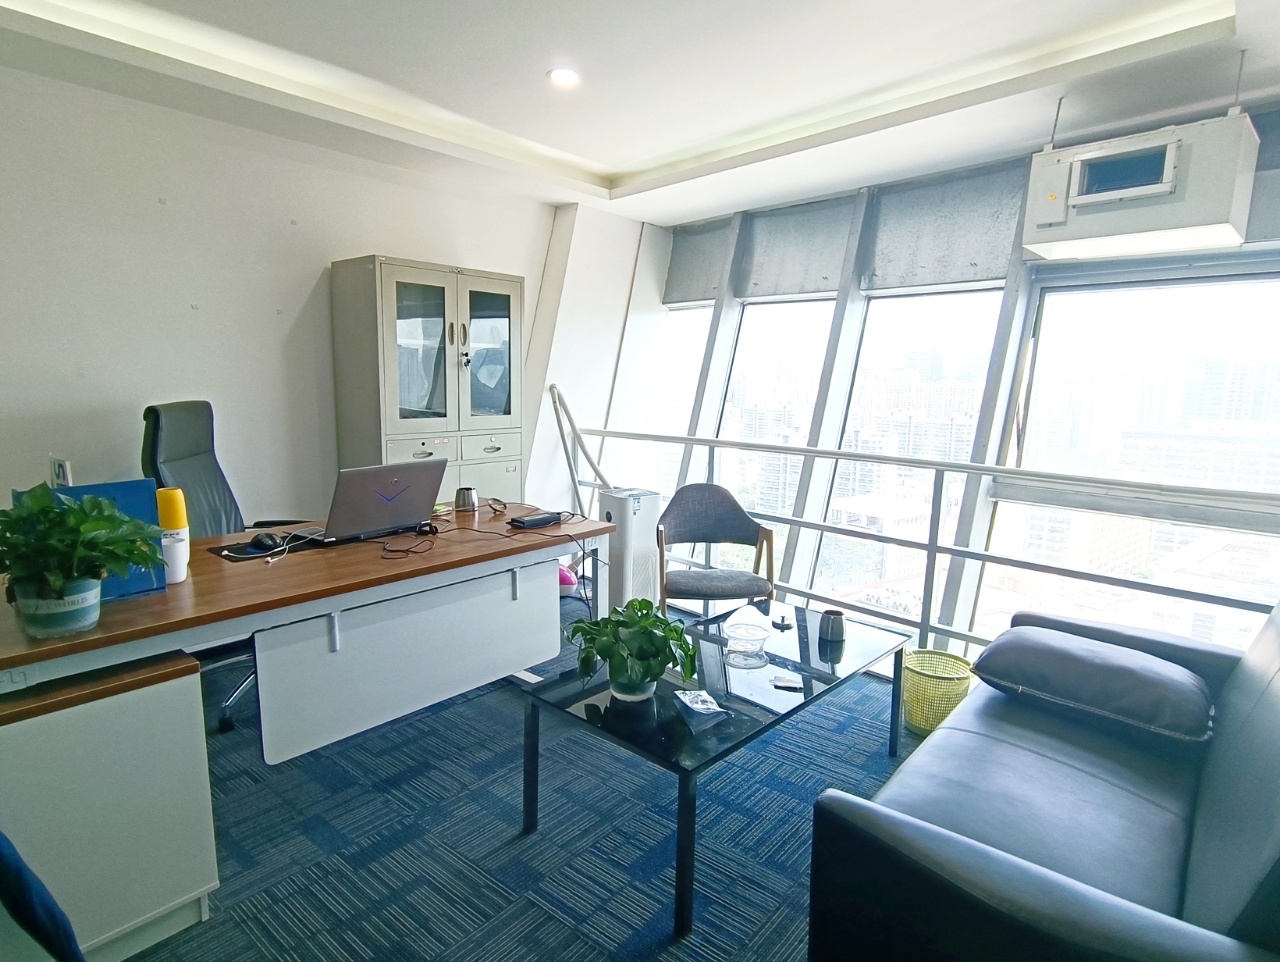 高新区新世纪环球中心100平精装小面积办公室 交通便利 位置优越  含物业